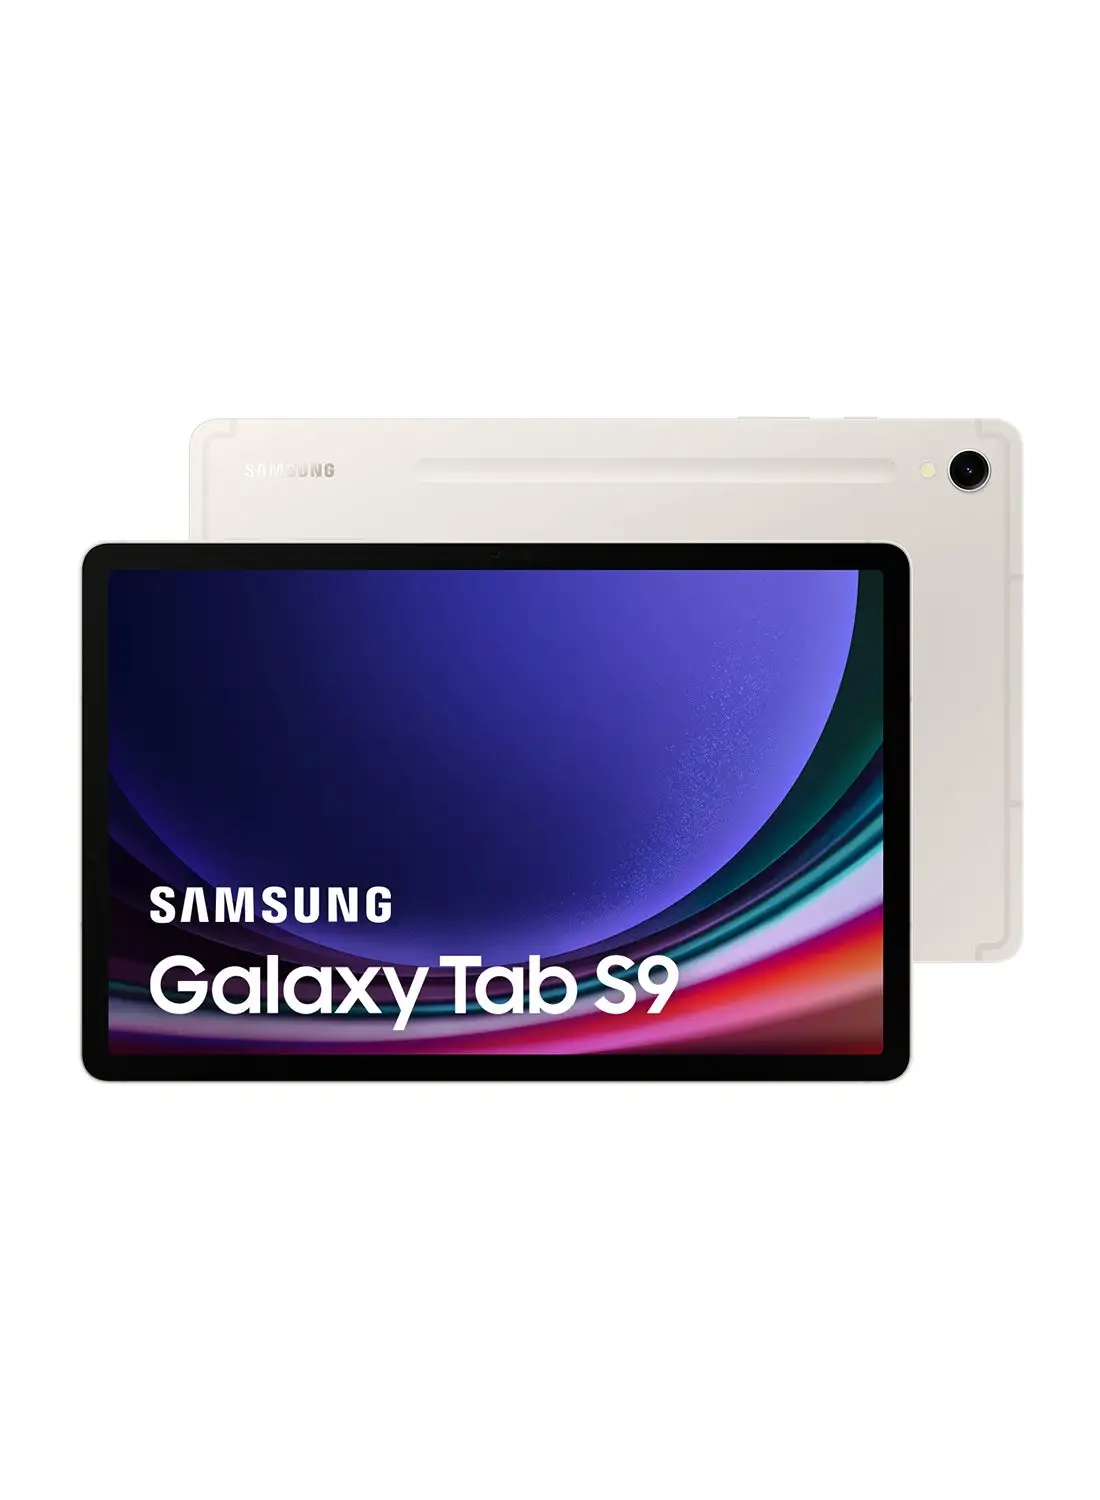 Samsung Galaxy Tab S9 Beige 8GB RAM 128GB 5G - Middle East Version